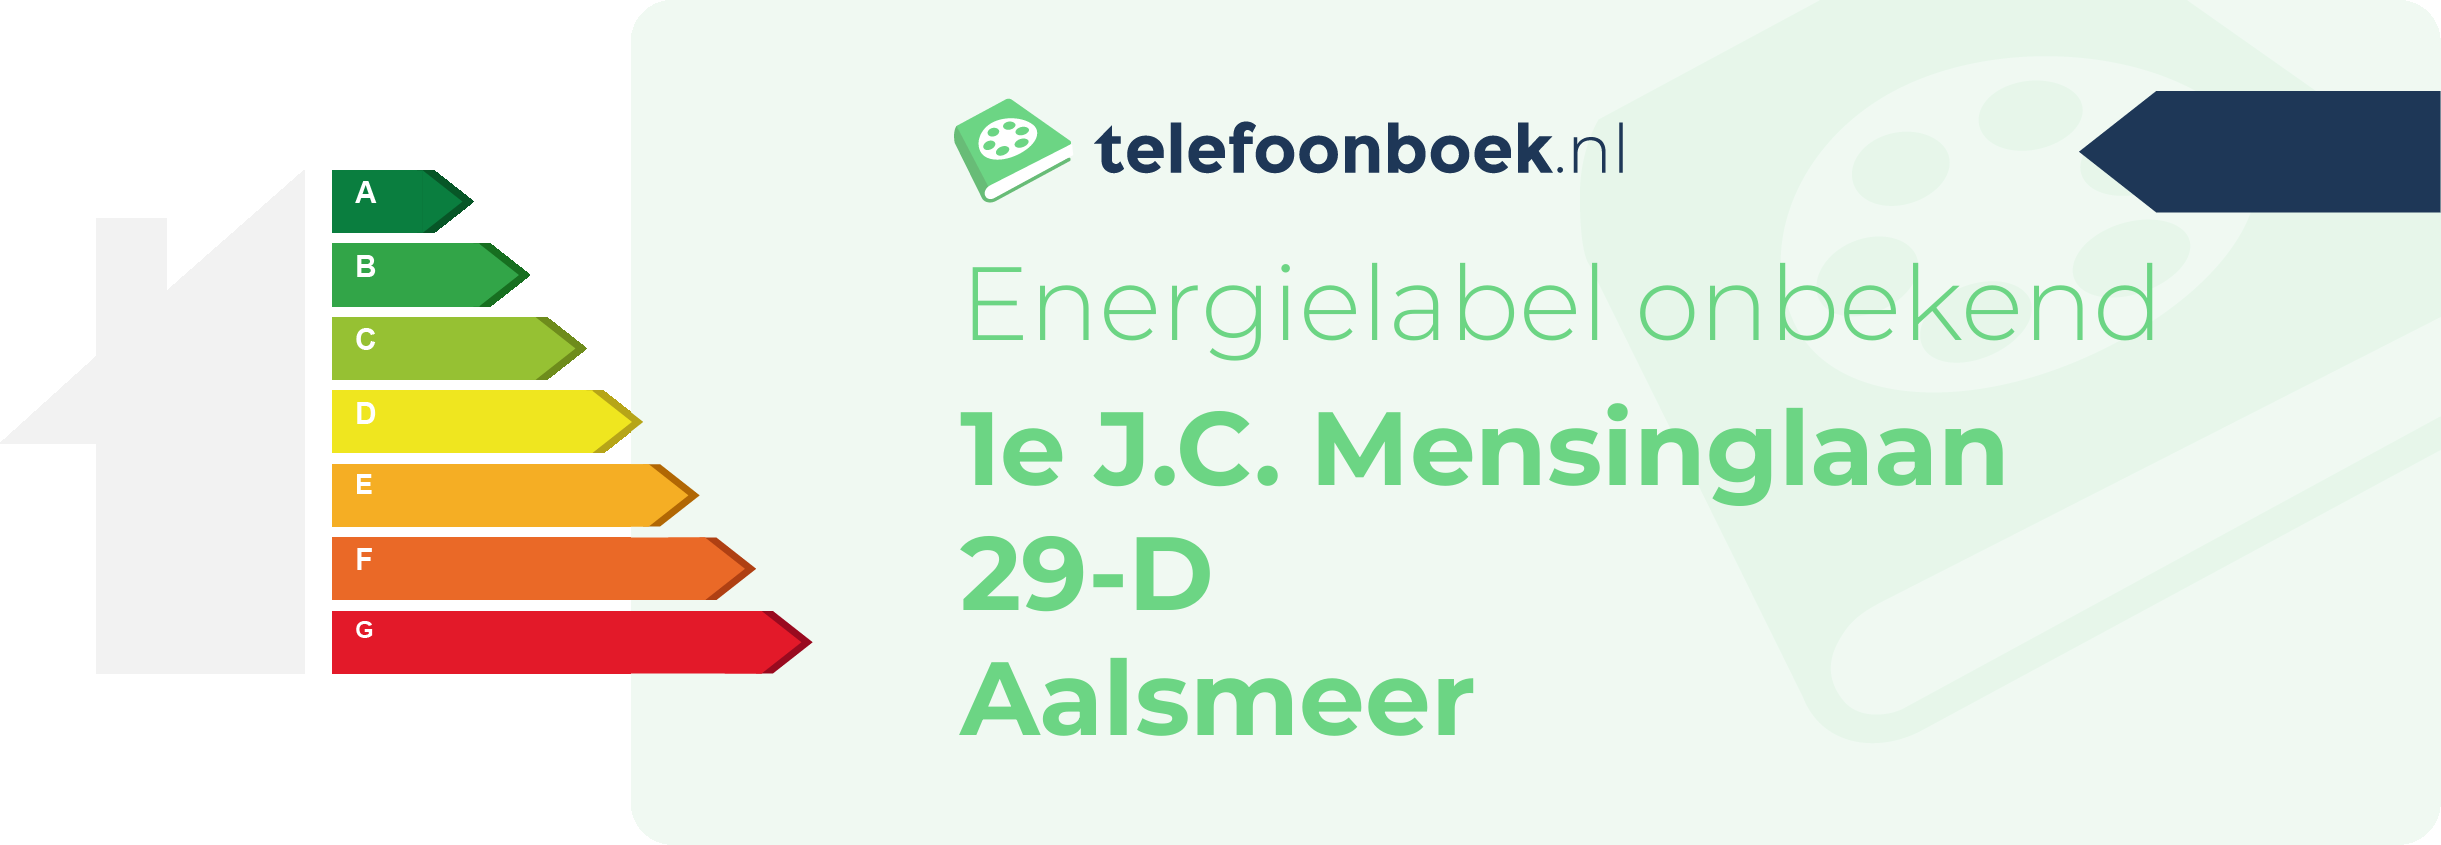 Energielabel 1e J.C. Mensinglaan 29-D Aalsmeer